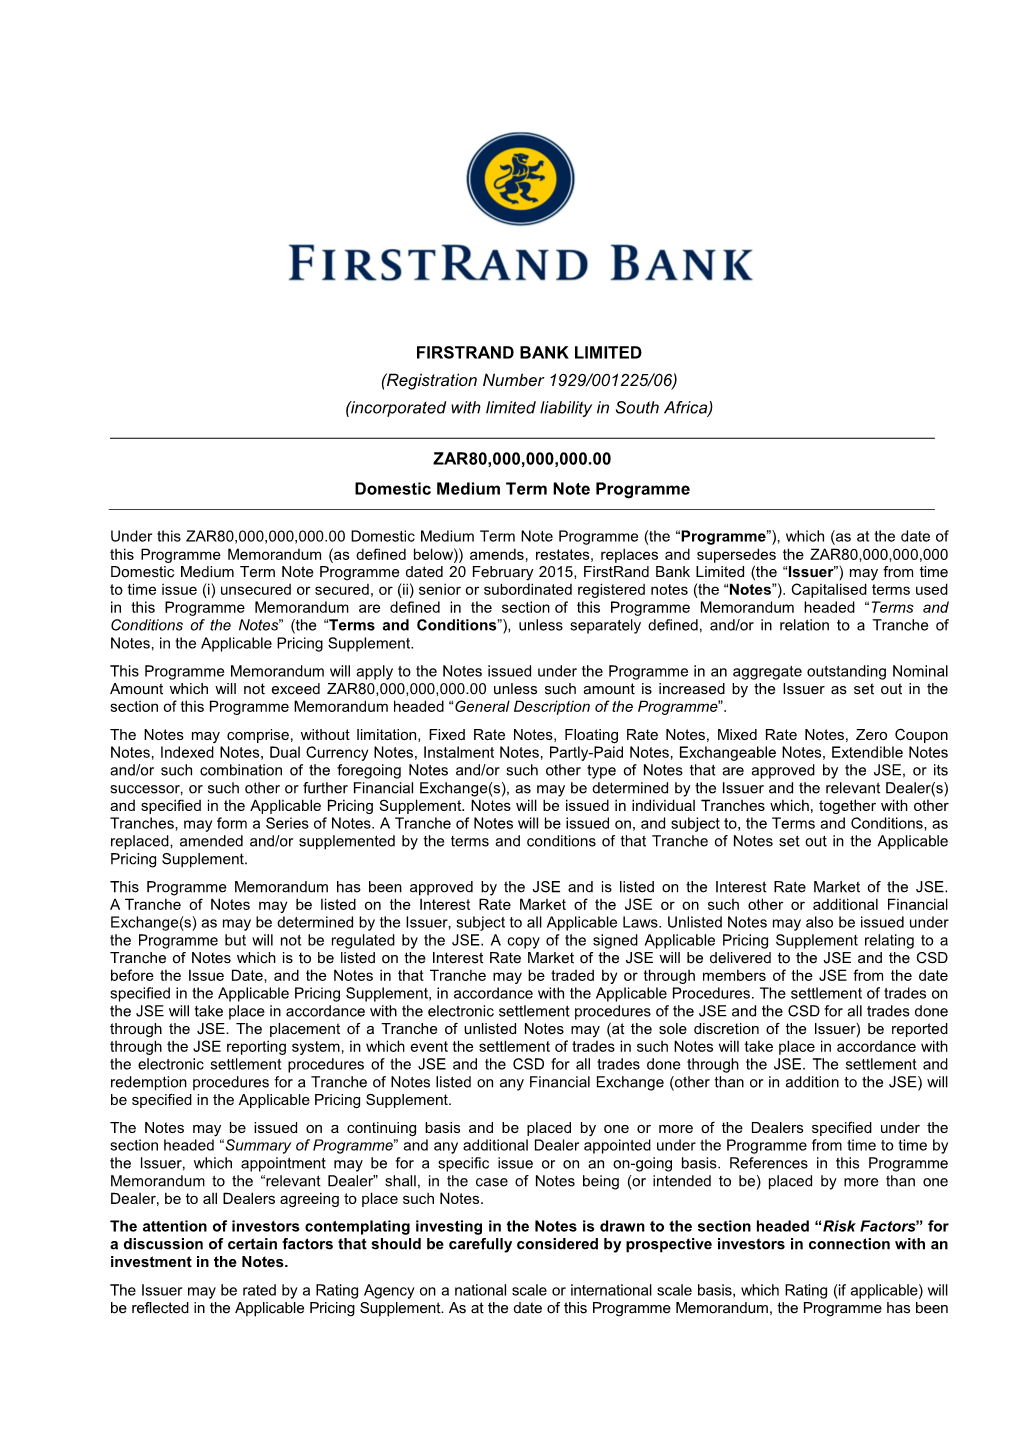 Firstrand Bank Limited R80 Billion DMTN Programme – 14 October 2015